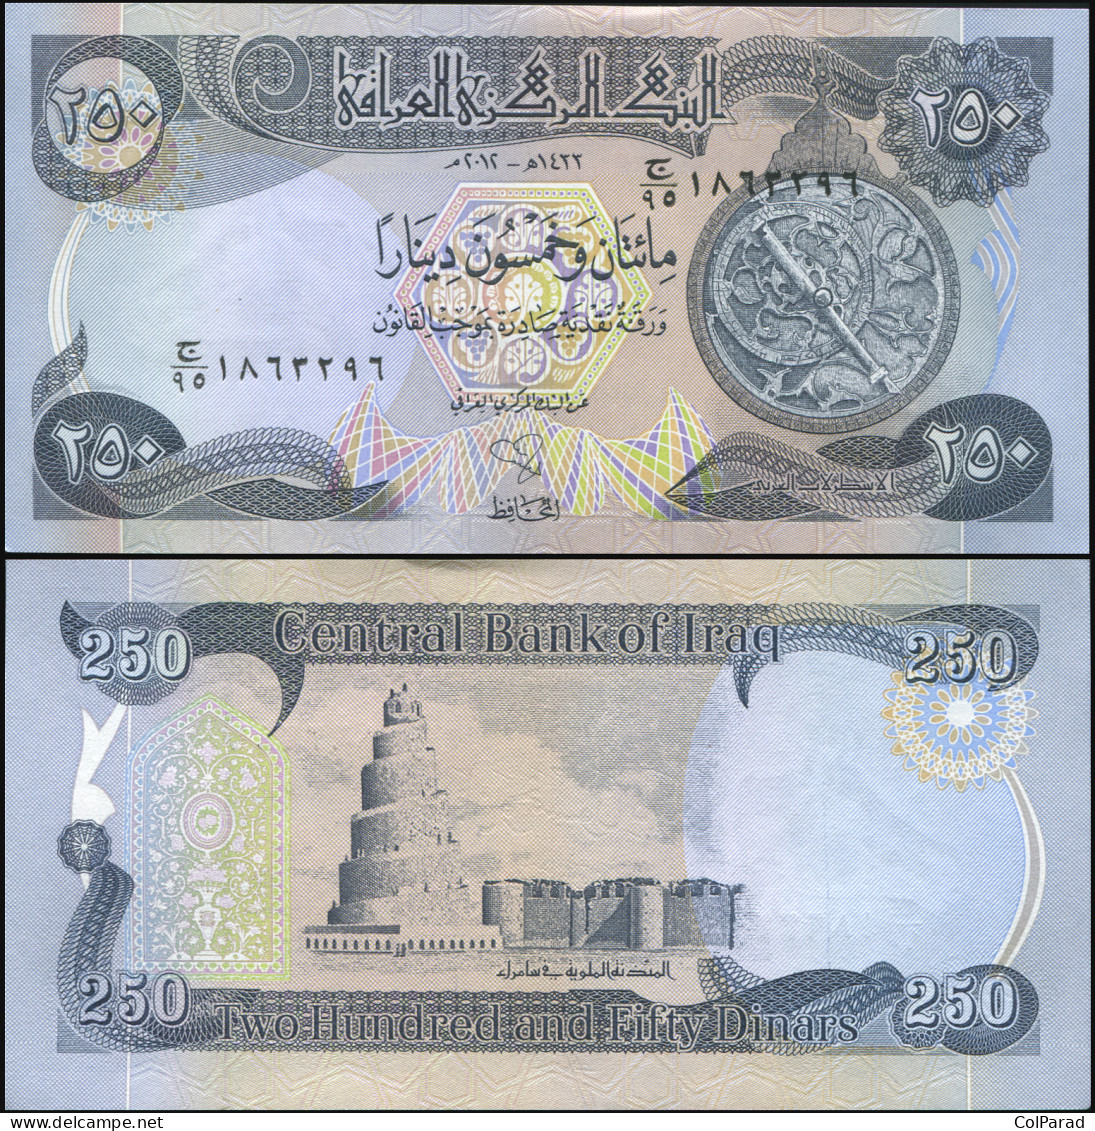 IRAQ 250 DINARS - ١٤٣٣ / 2012 - Paper Unc - P.91b Banknote - Iraq